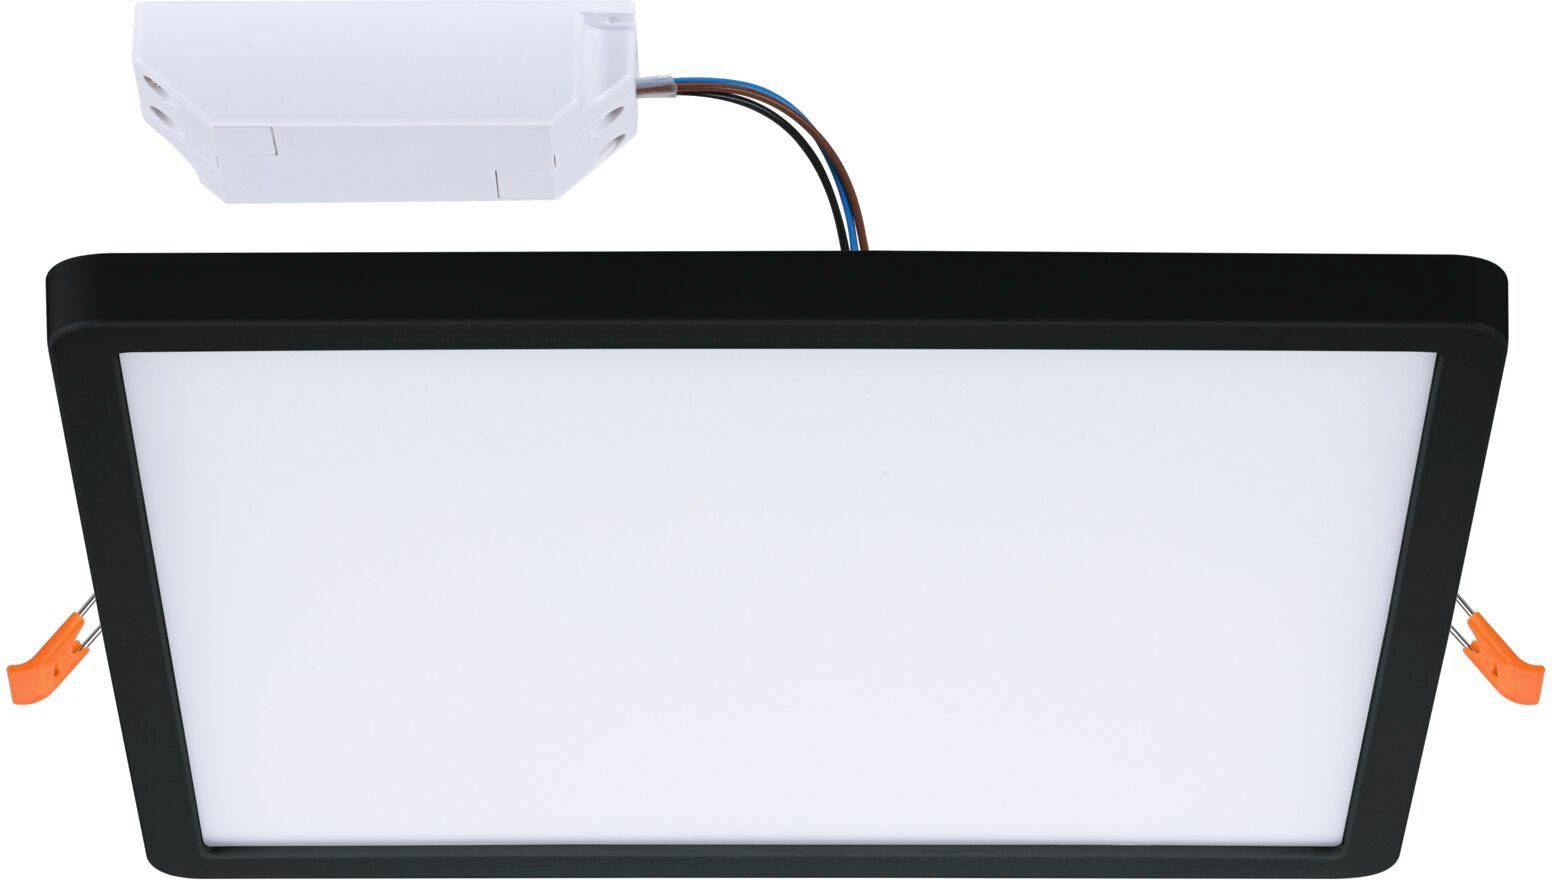 VariFit Home 230x230mm Paulmann ZigBee, eckig Einbaupanel Einbauleuchte Schwarz steuerbar, App LED dimmbar, Tunable LED Smart LED Zigbee integriert, IP44 White Areo Tageslichtweiß, fest